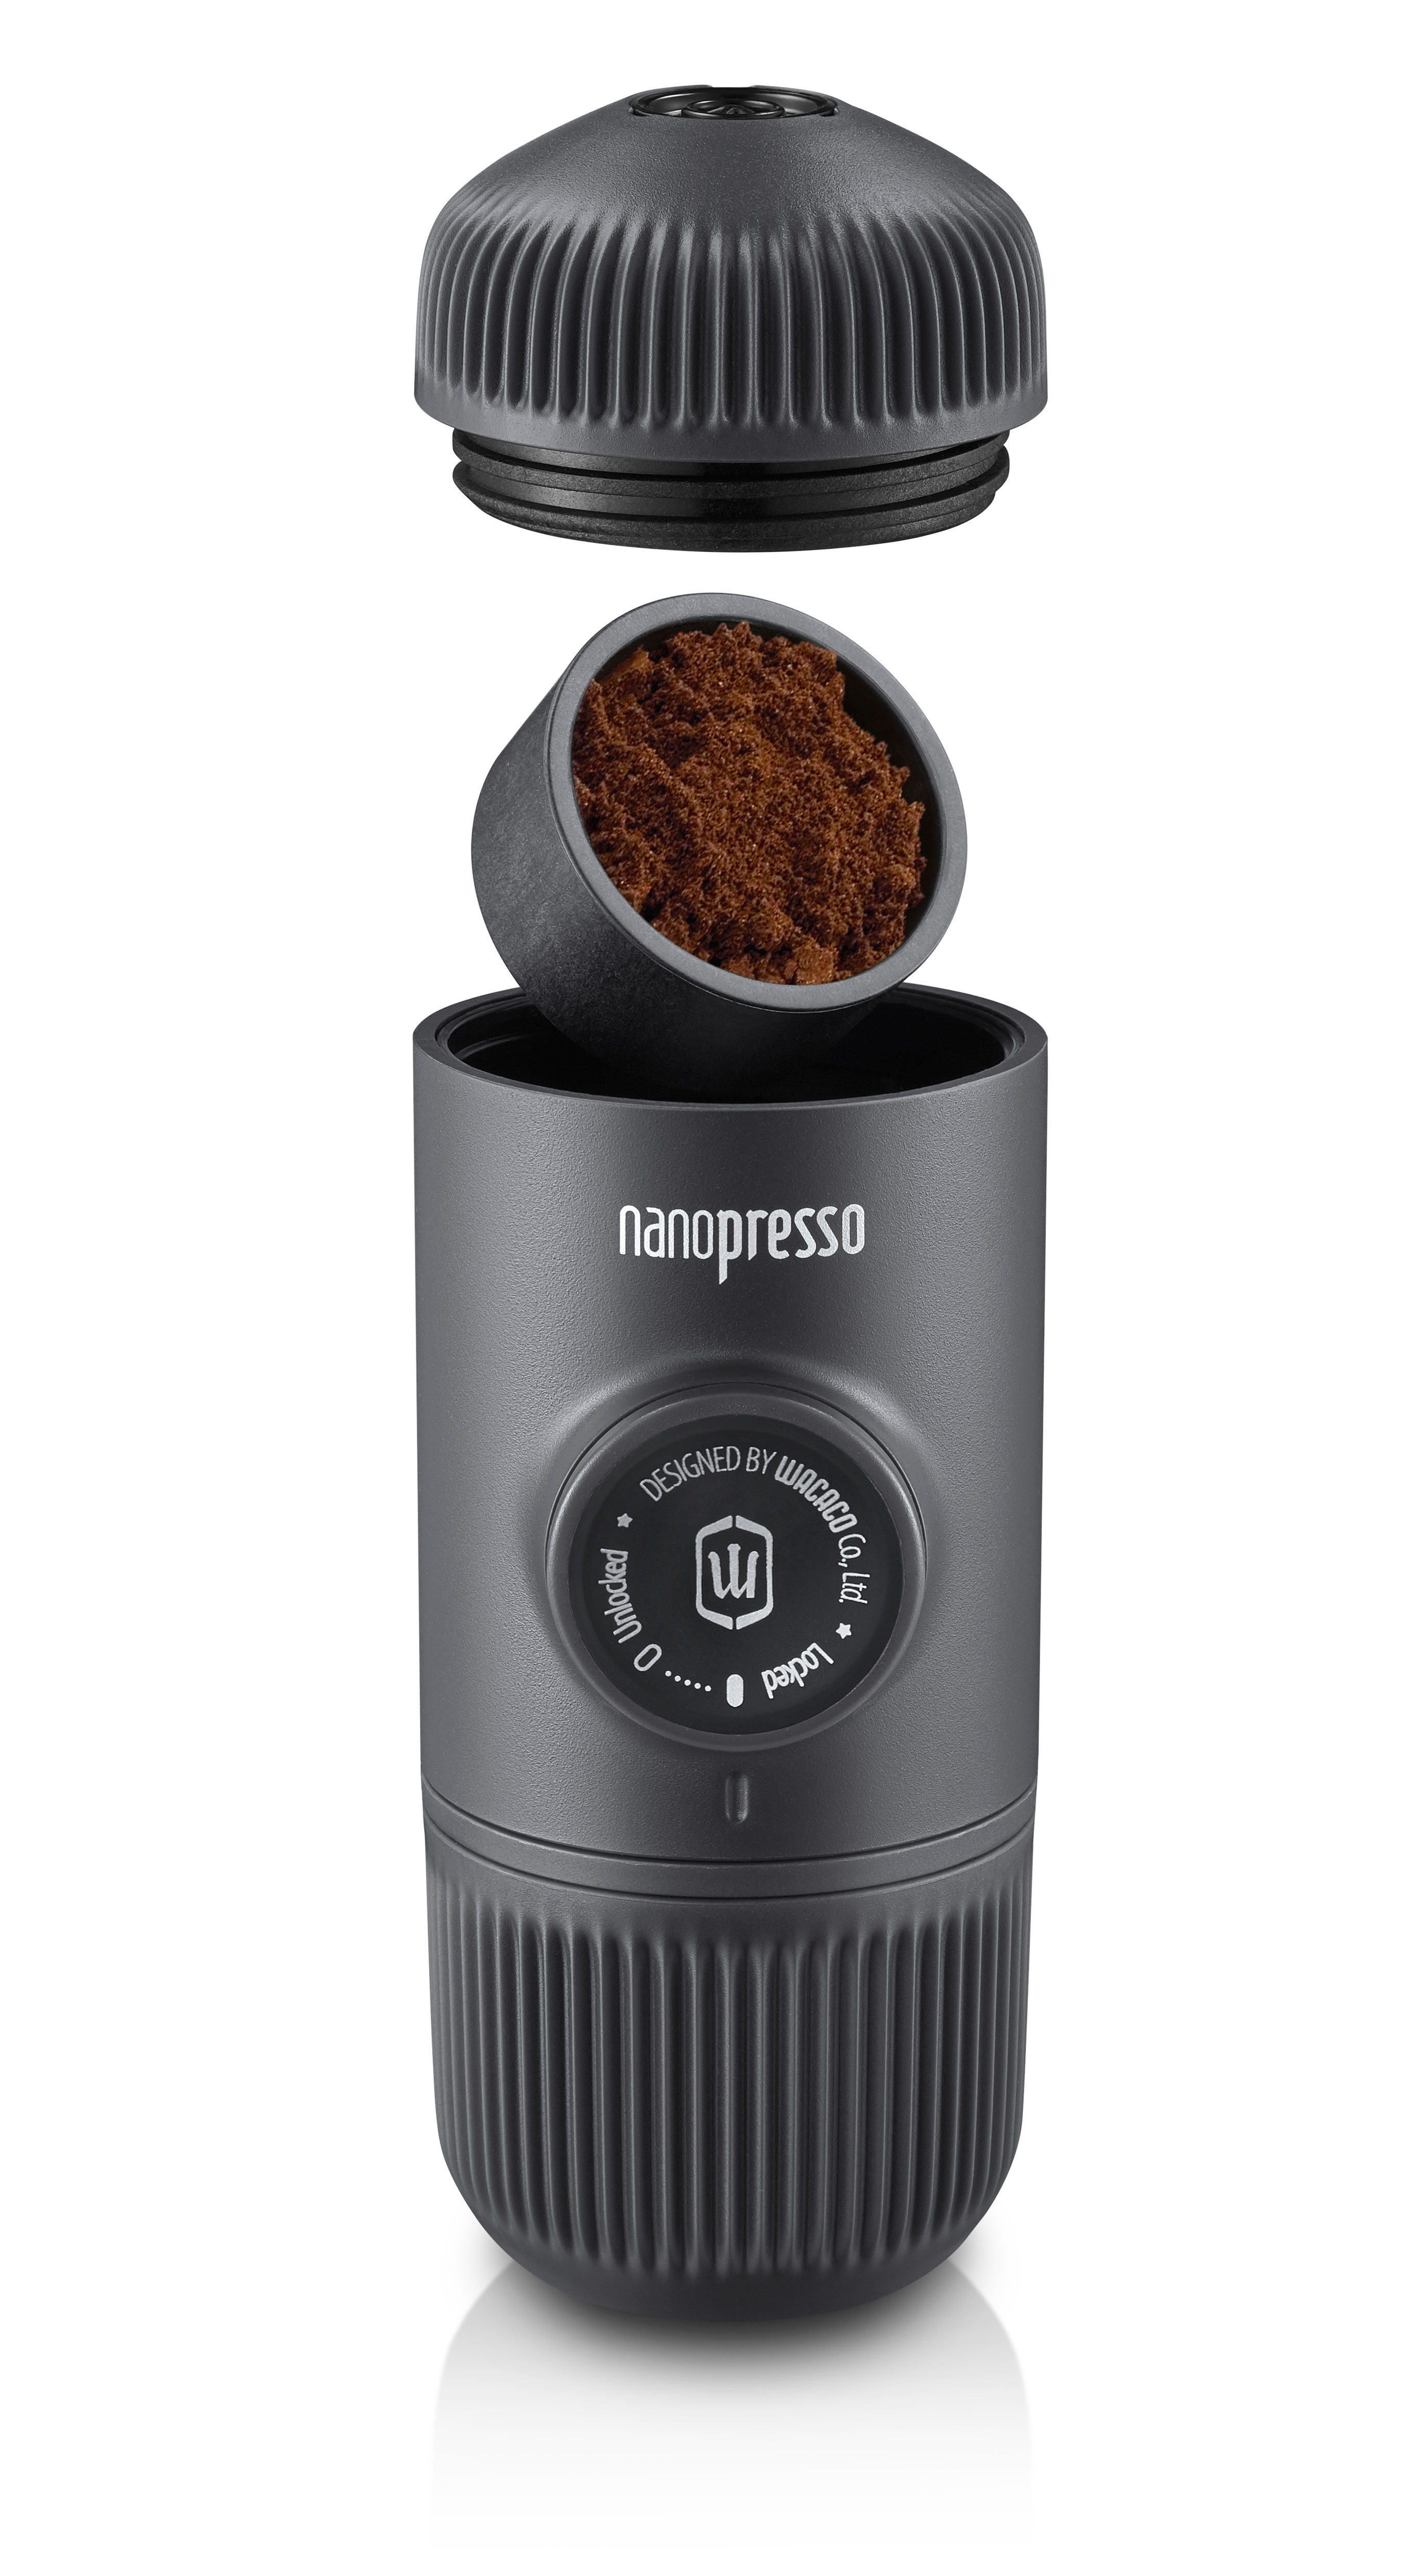 Wacaco Nanopresso Portable Espresso Machine, Upgrade Version of Minipresso, 18 Bar Pressure, Extra Small Travel Coffee Maker.